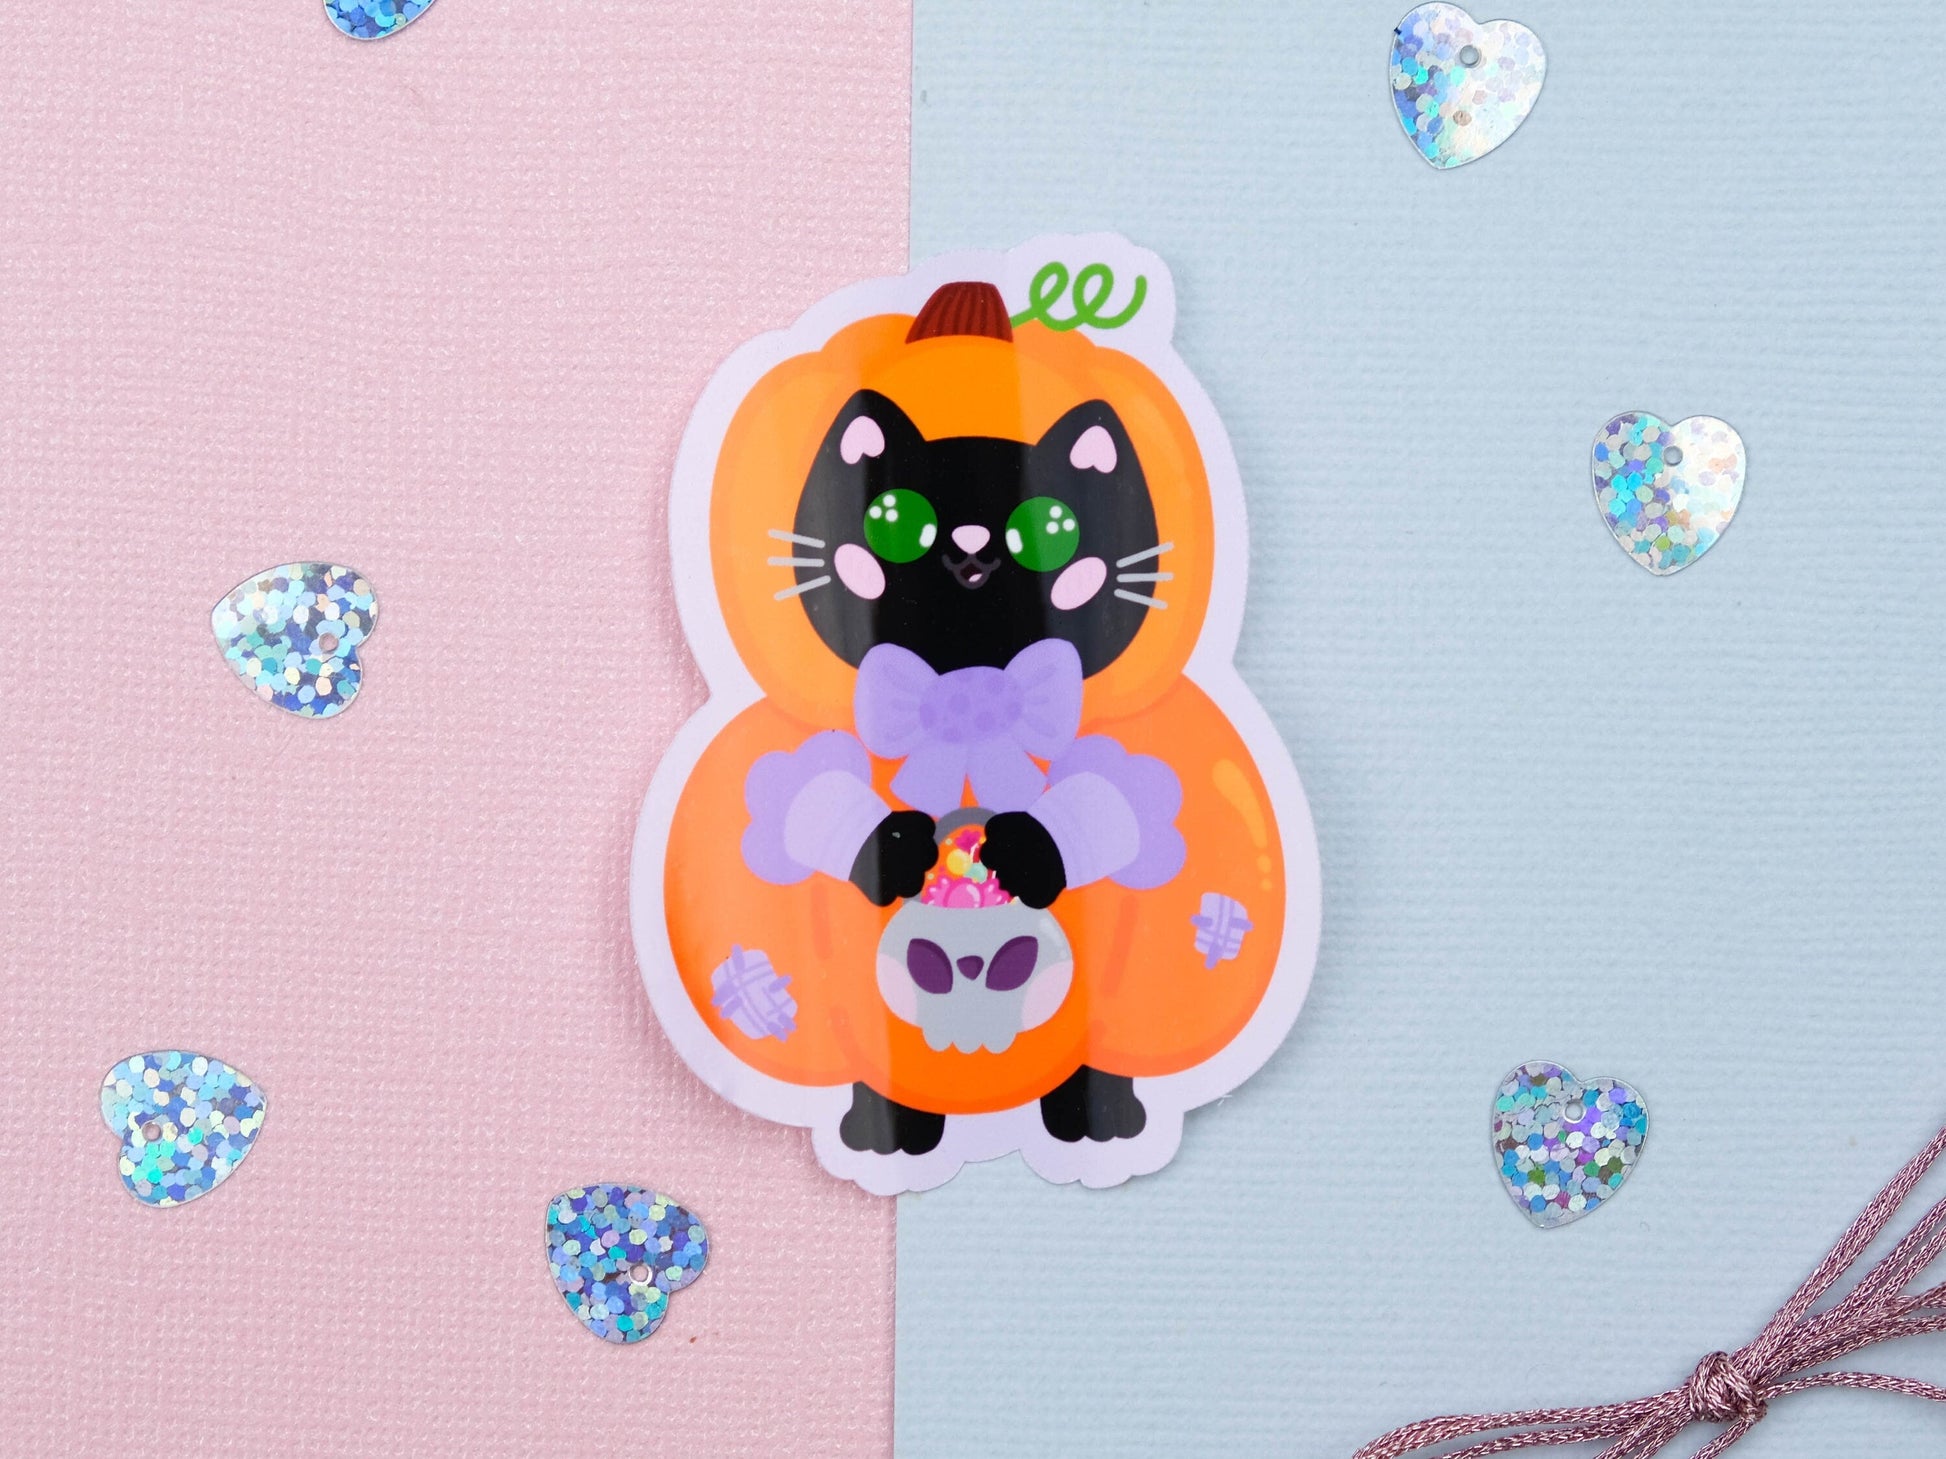 Cute Kitty dress up as a Pumpkin Sticker - Cute Halloween sticker - Bullet Journal stickers - Pumpkin Cat Sticker